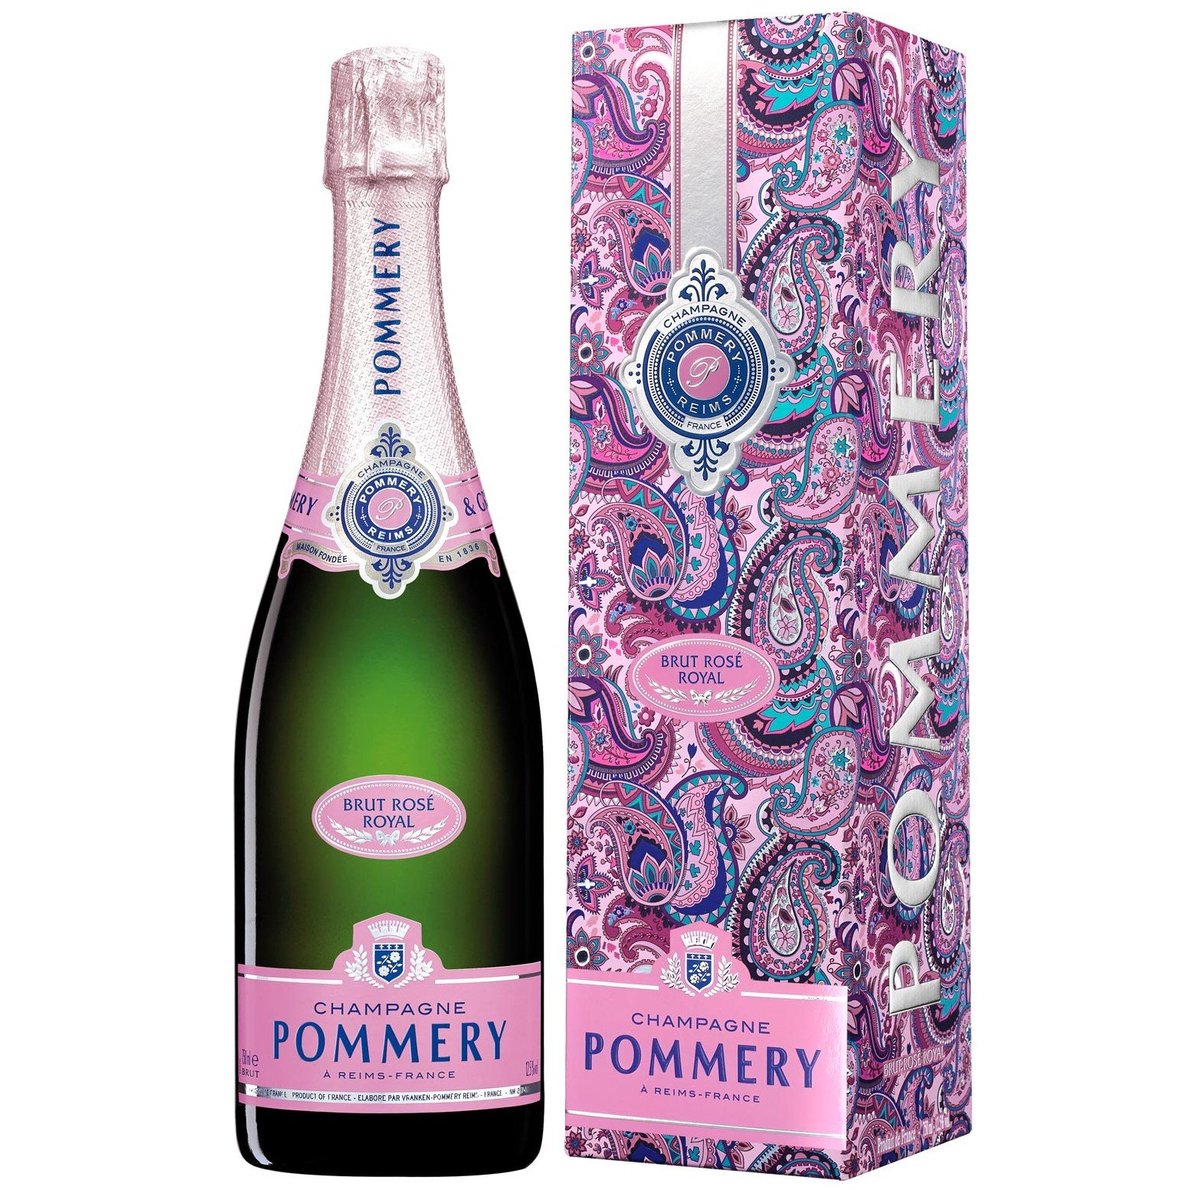 Champagne Pommery Brut Rosé Royal, dárkové balení, limitovaná edice